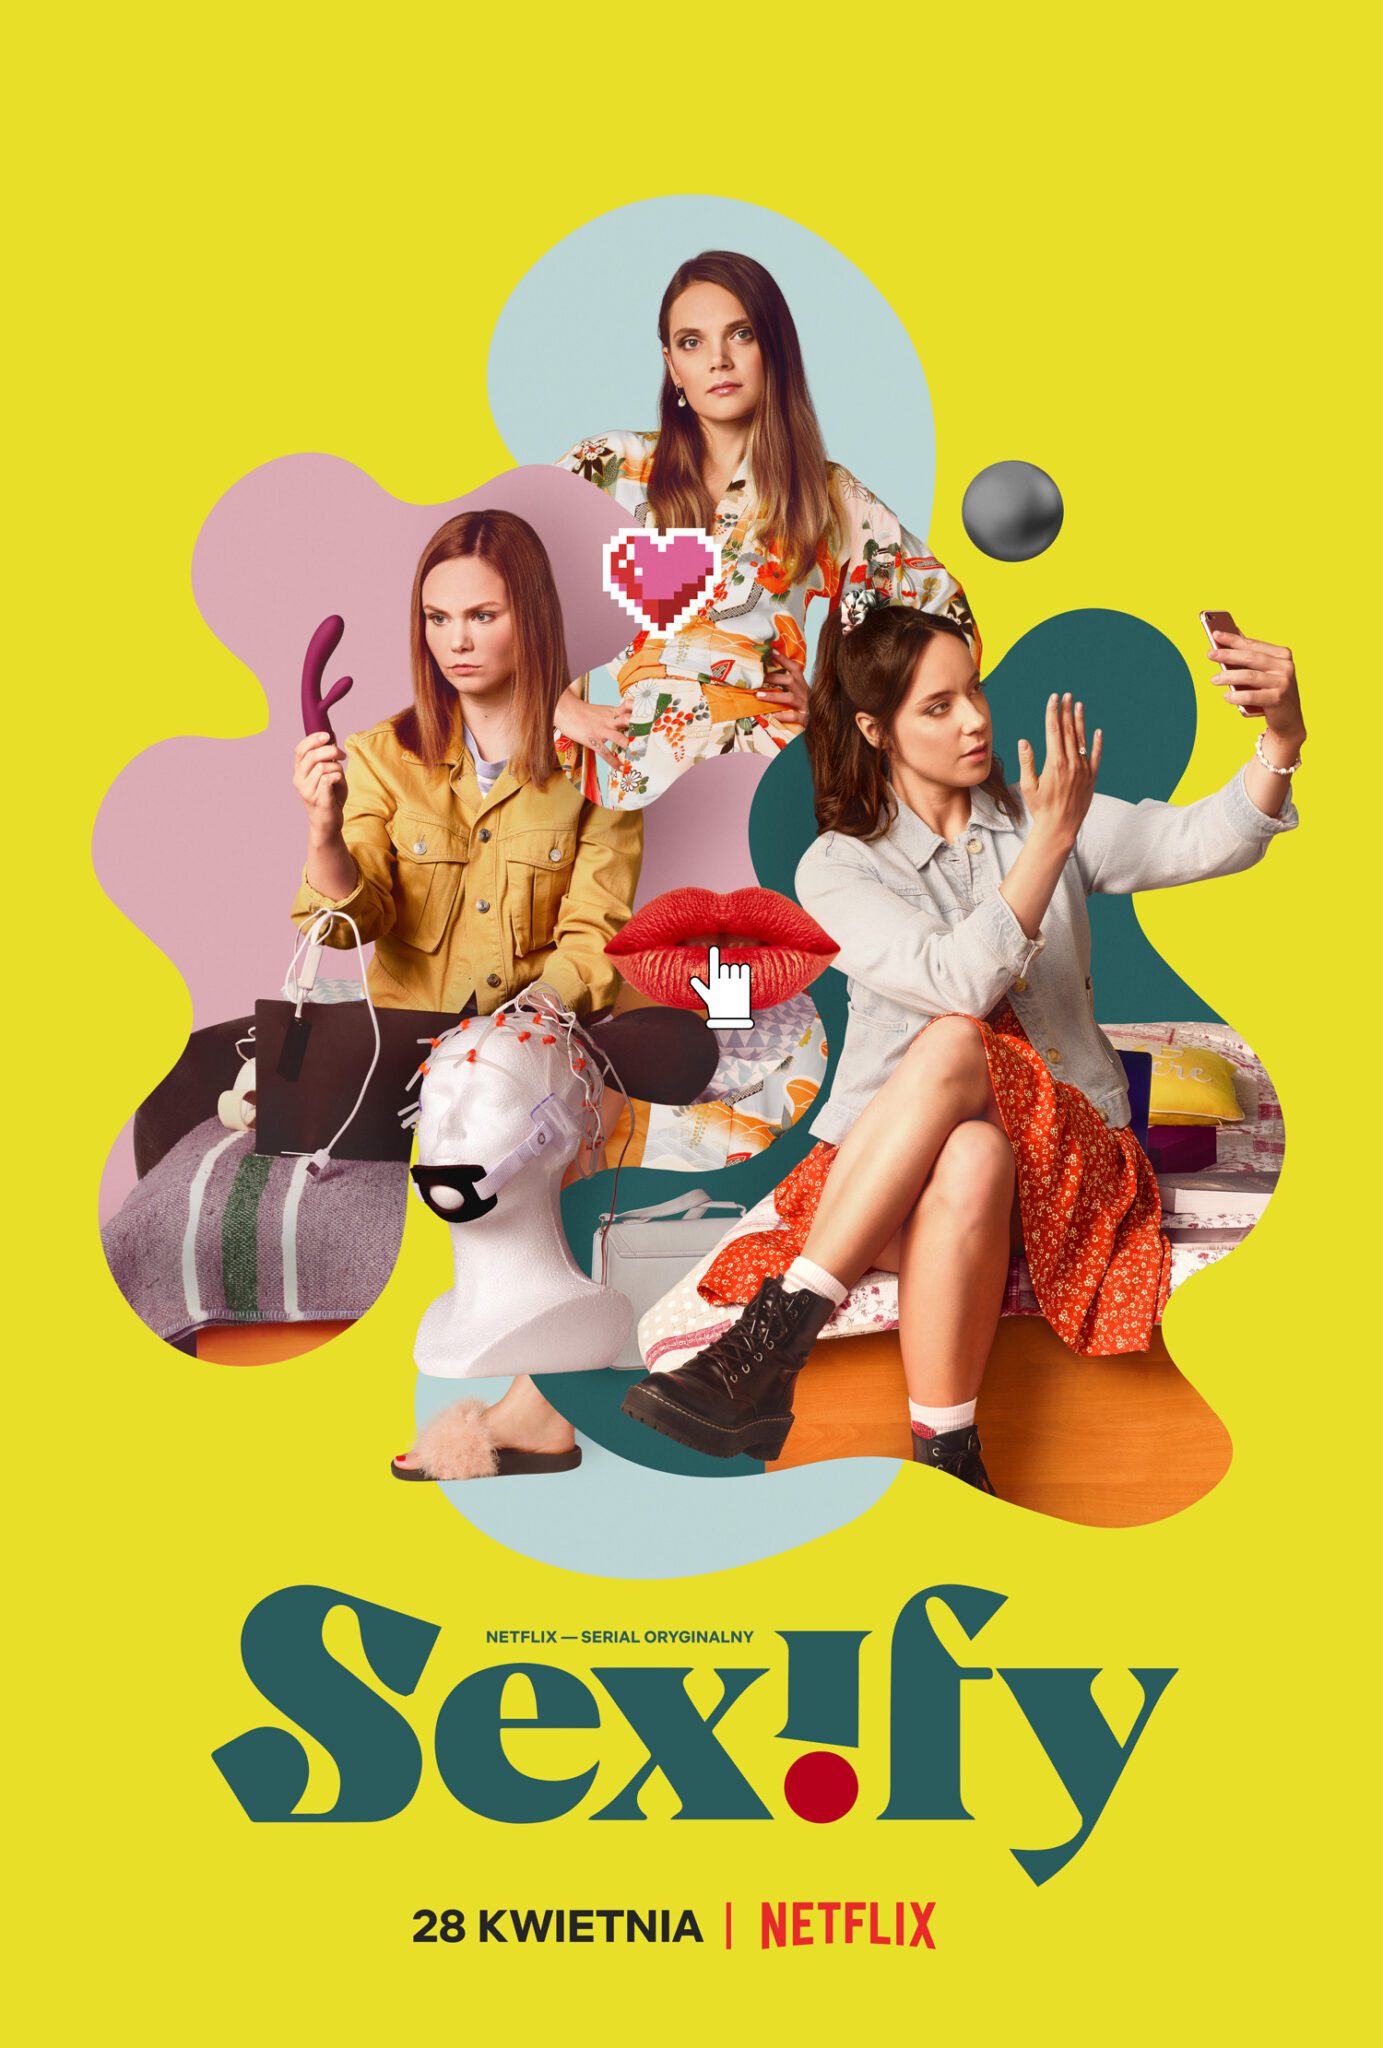 Netflix udostępnił oficjalny zwiastun i plakat nowego polskiego serialu "Sexify"